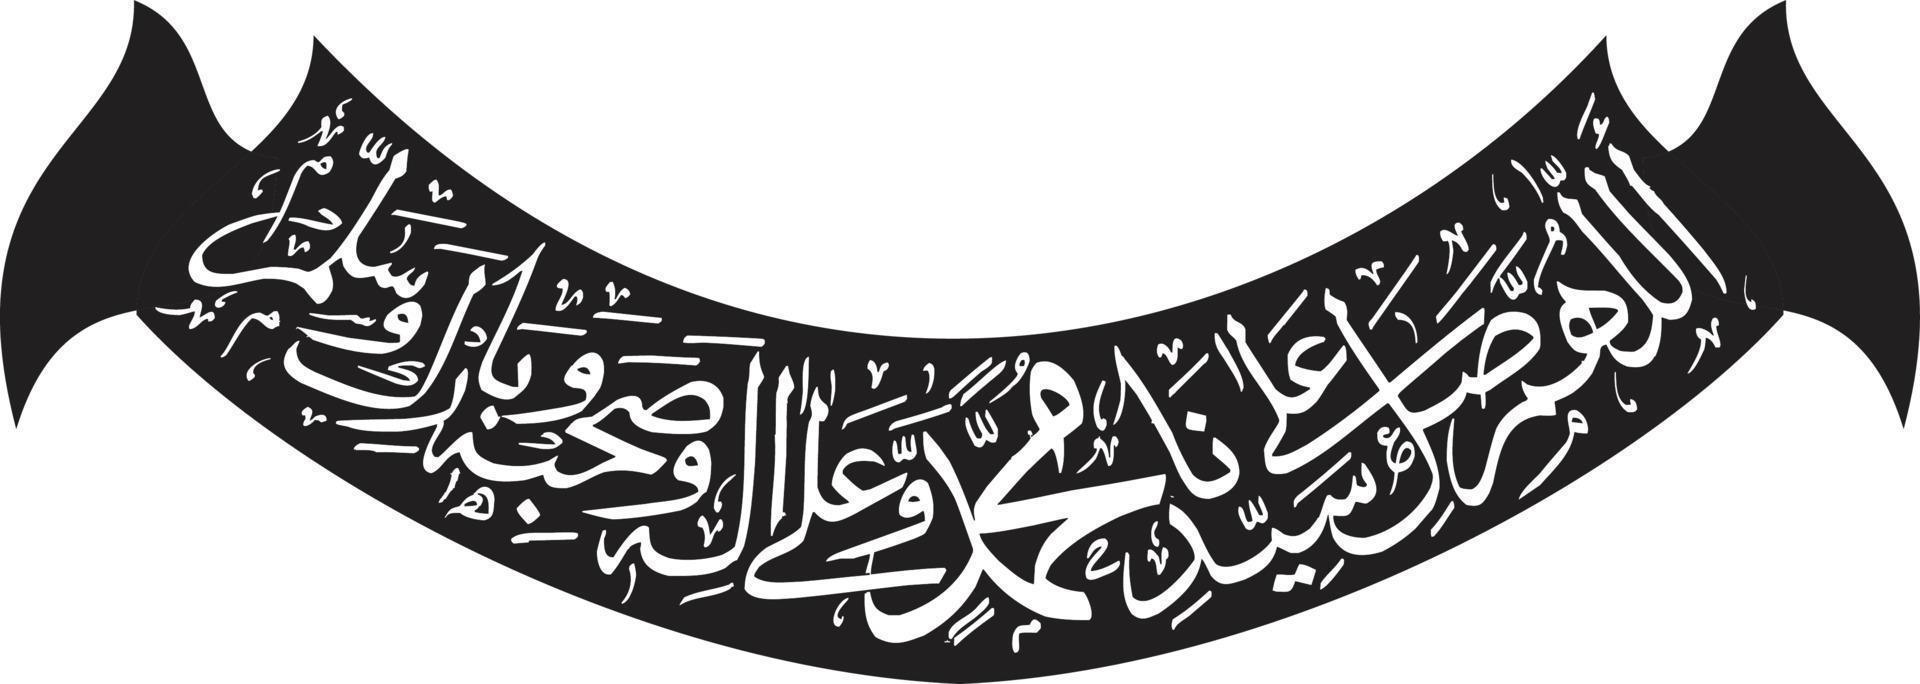 vecteur libre de calligraphie arabe islamique arbi